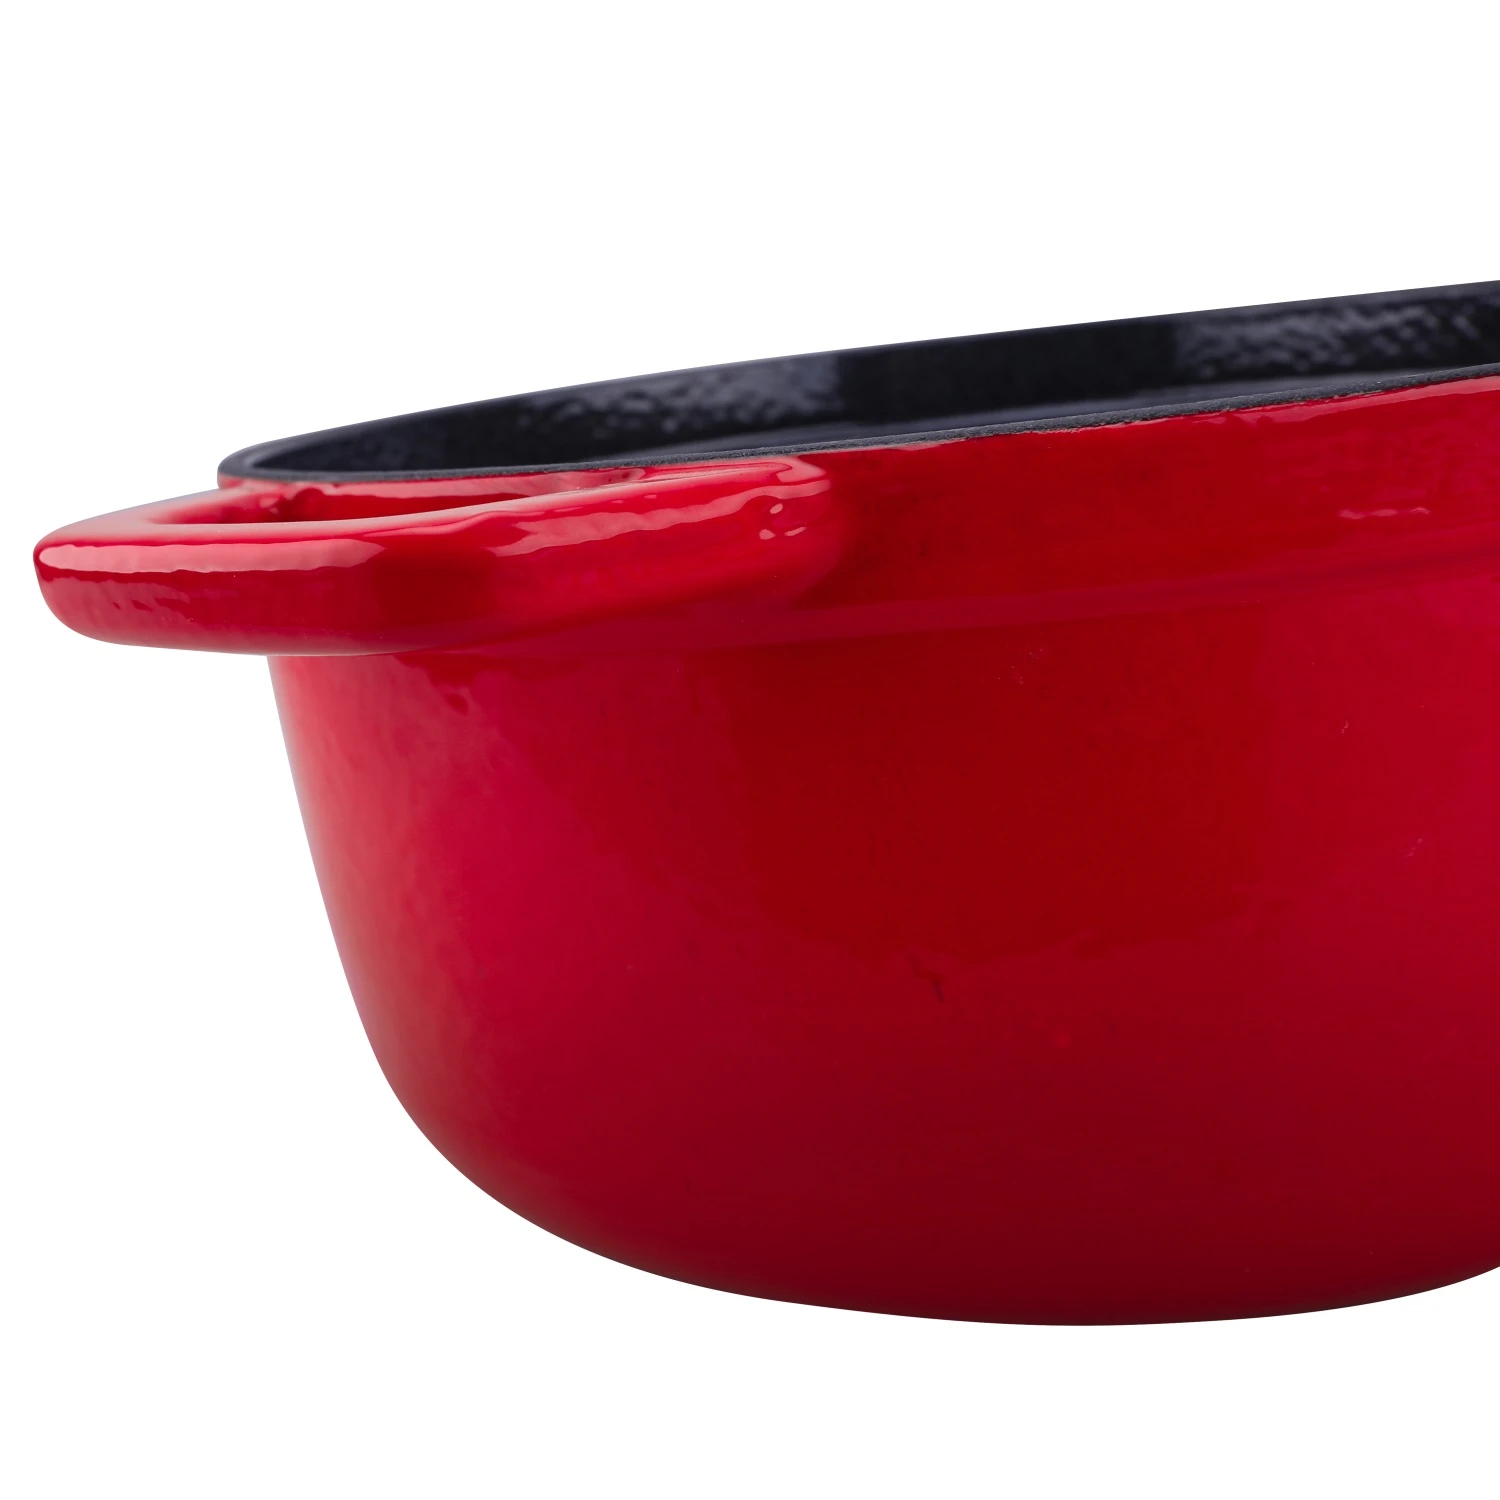 Amercook Soup Pot Enamel Pan Home Upset Ears Cooker Pot Casserole Hot Pot Insulated Casserole